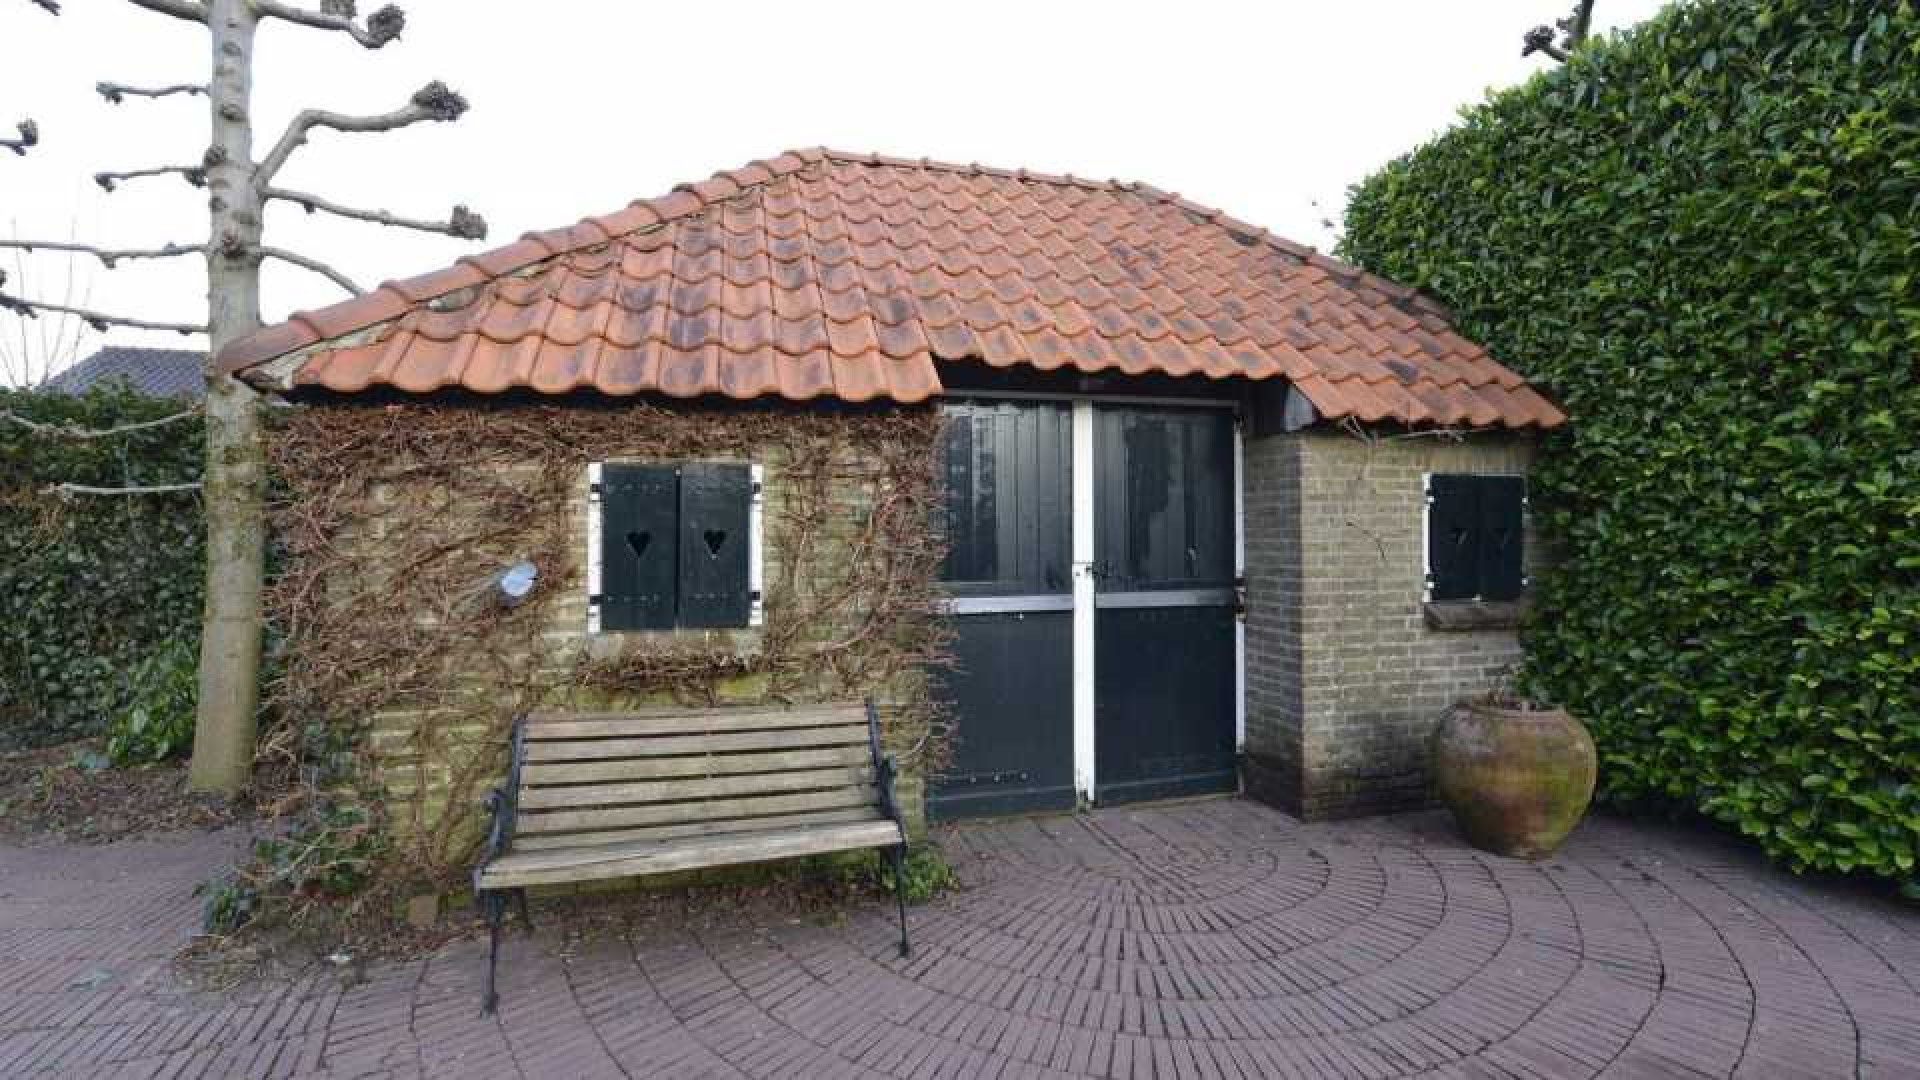 Prinses Irene verkoopt haar landhuis in Wijk bij Duurstede. Zie foto's 16